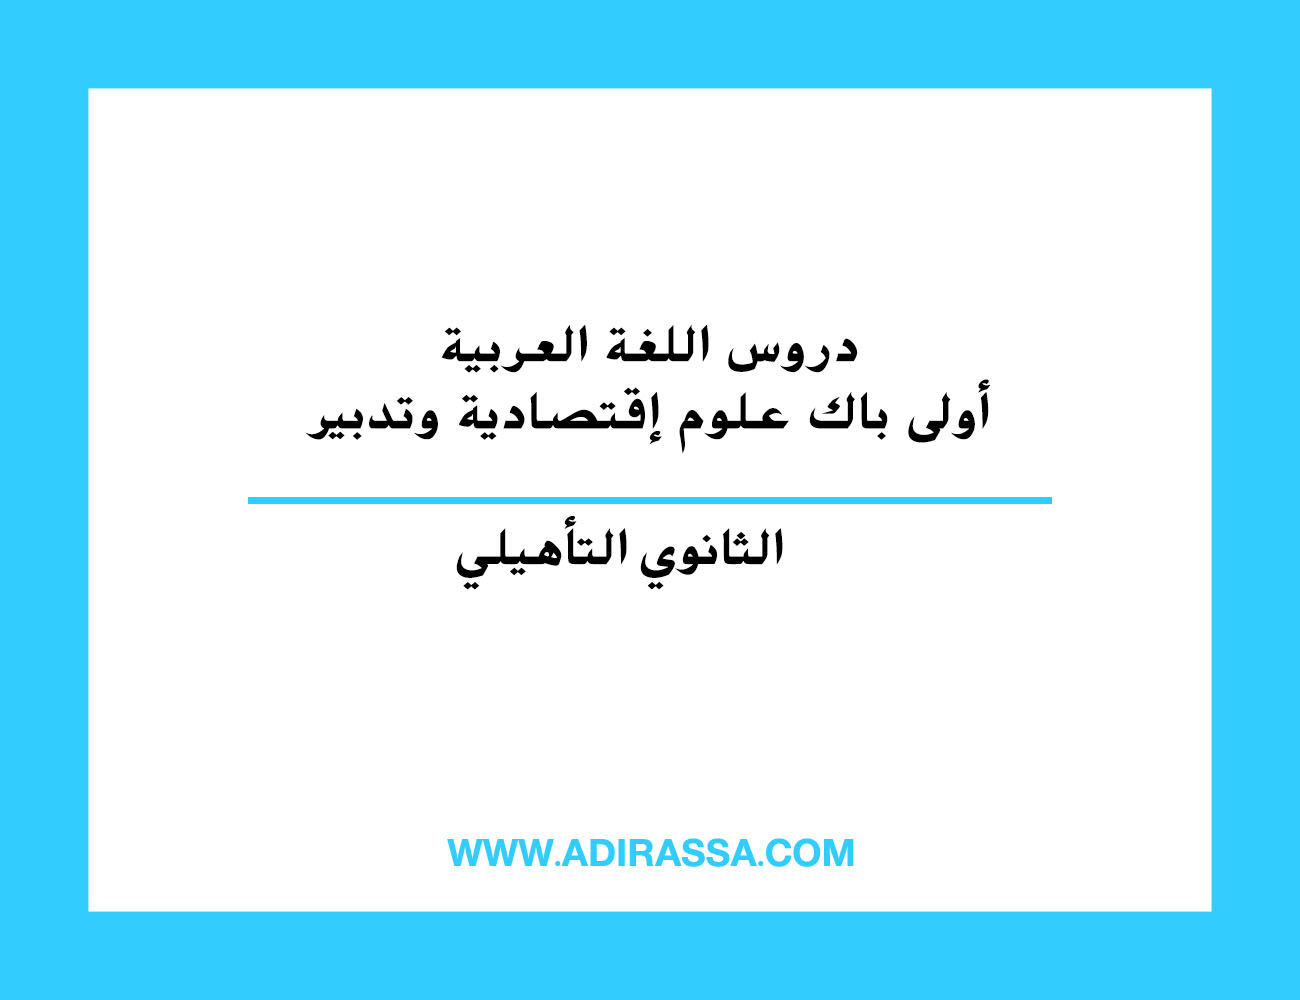 دروس اللغة العربية أولى باكالوريا علوم إقتصادية وتدبير المقررة في المغرب